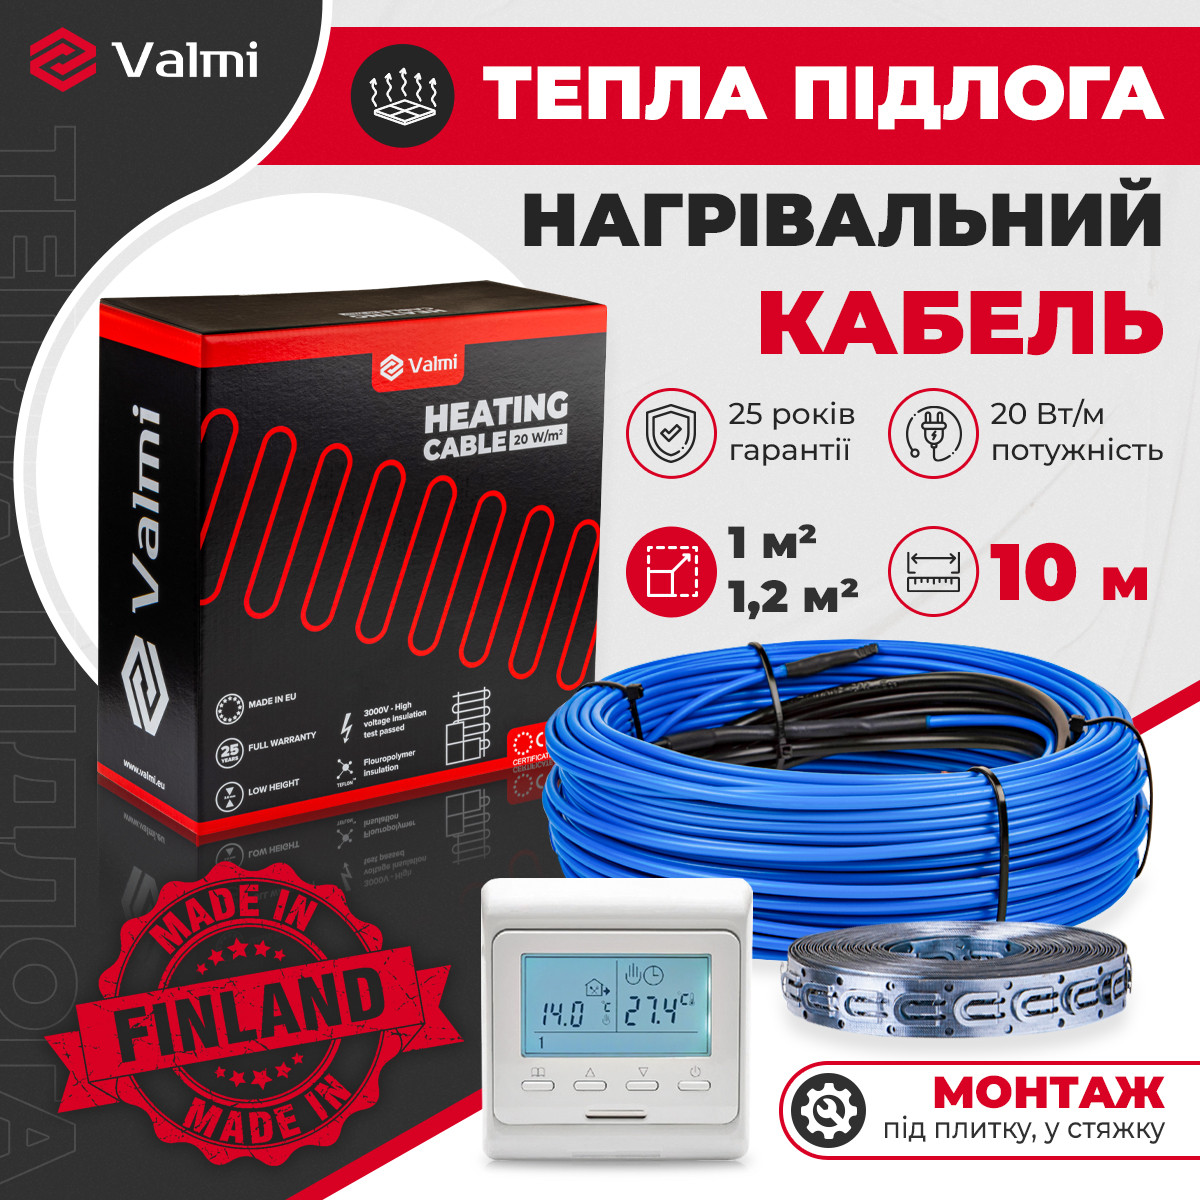 Електрична тепла підлога Valmi 1м²- 1,2м² / 200 Вт (10м) тонкий гріючий кабель 20 Вт/м з терморегулятором E51